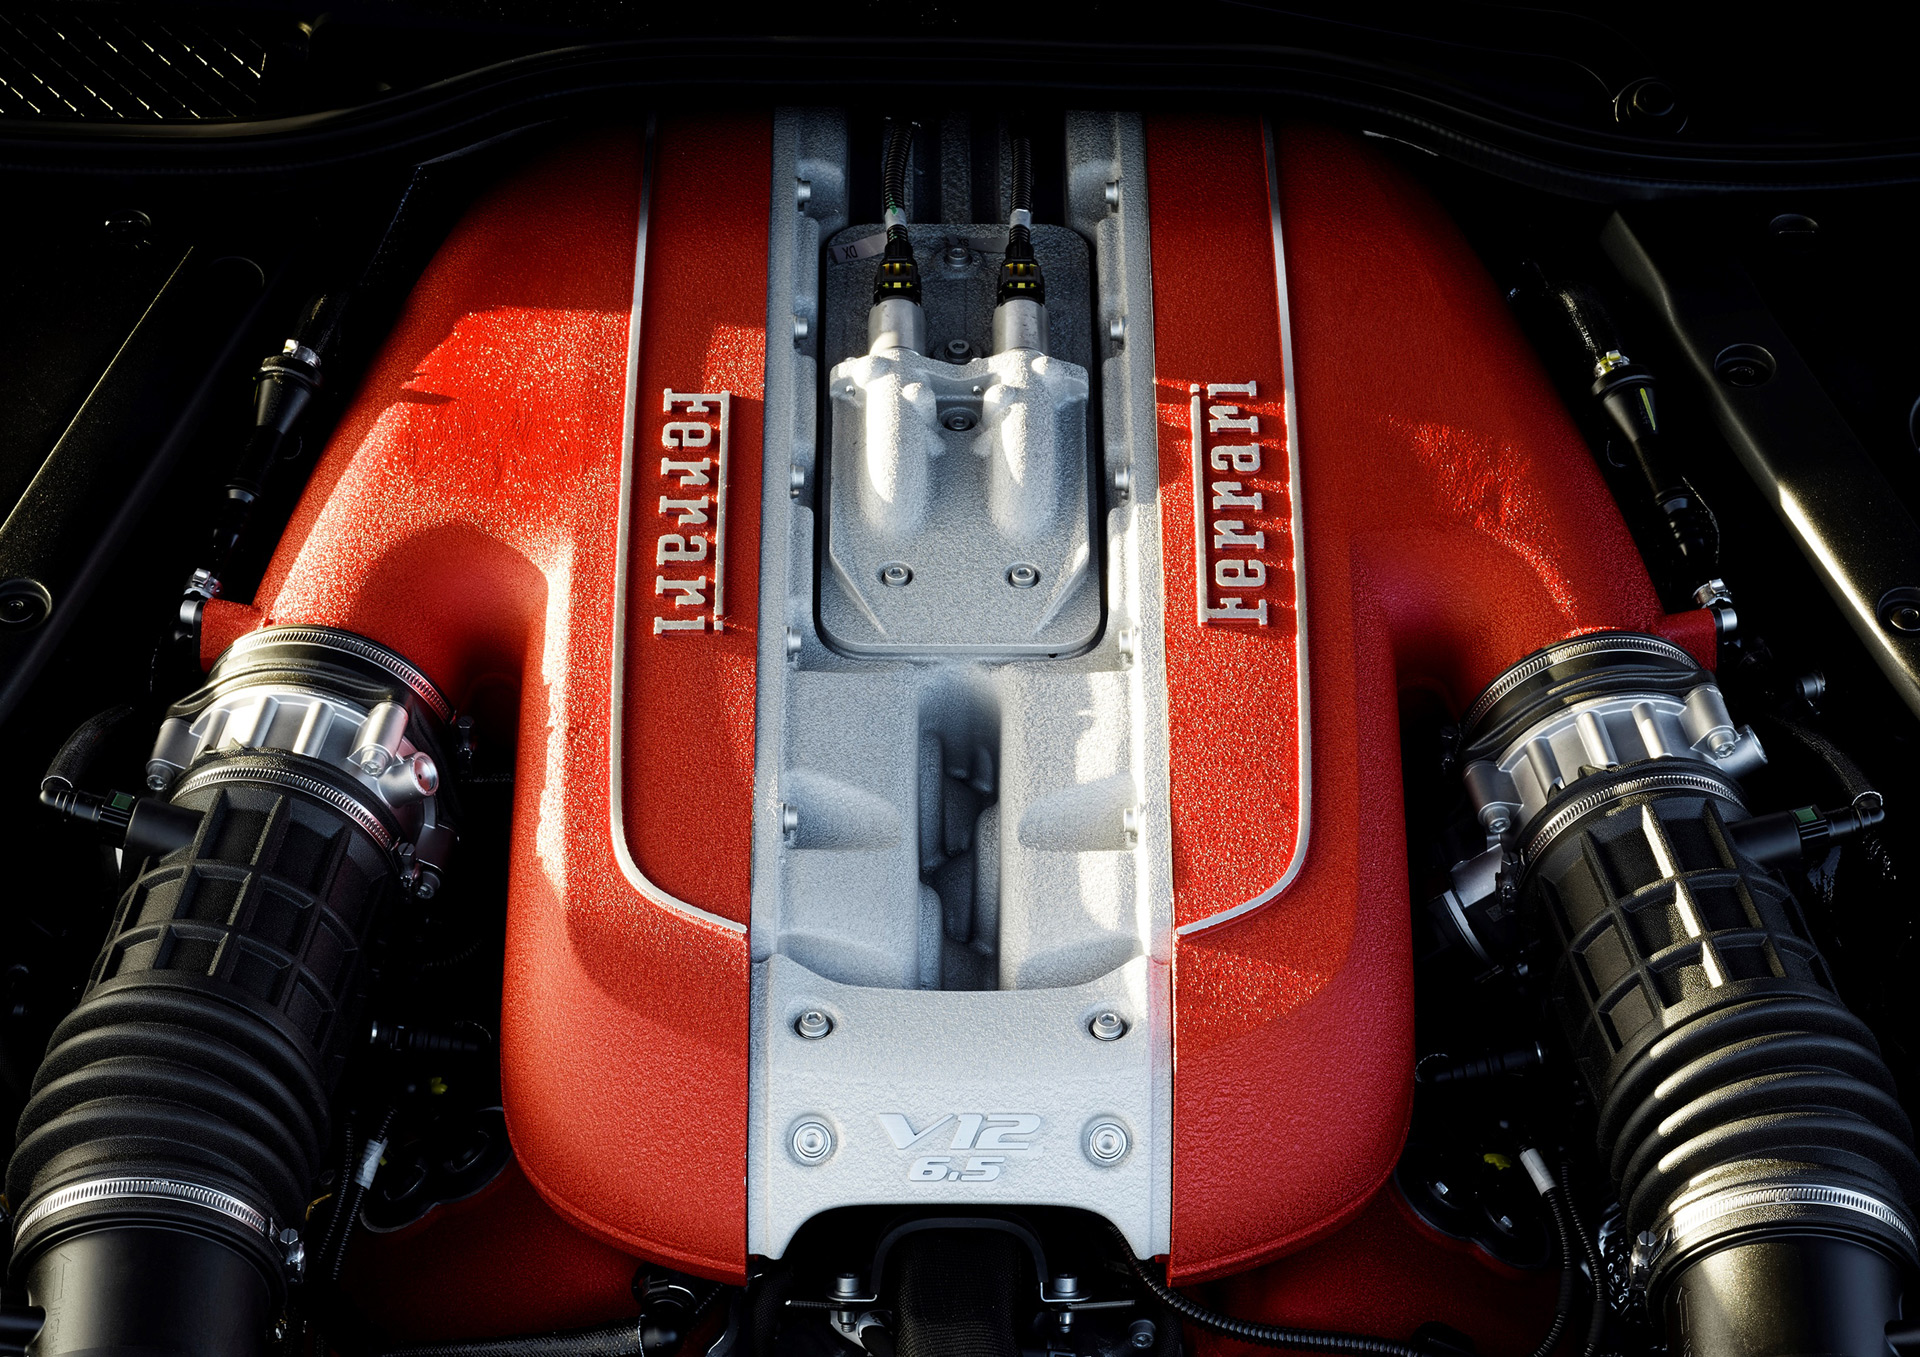 New V 12 engine confirmed for next Ferrari